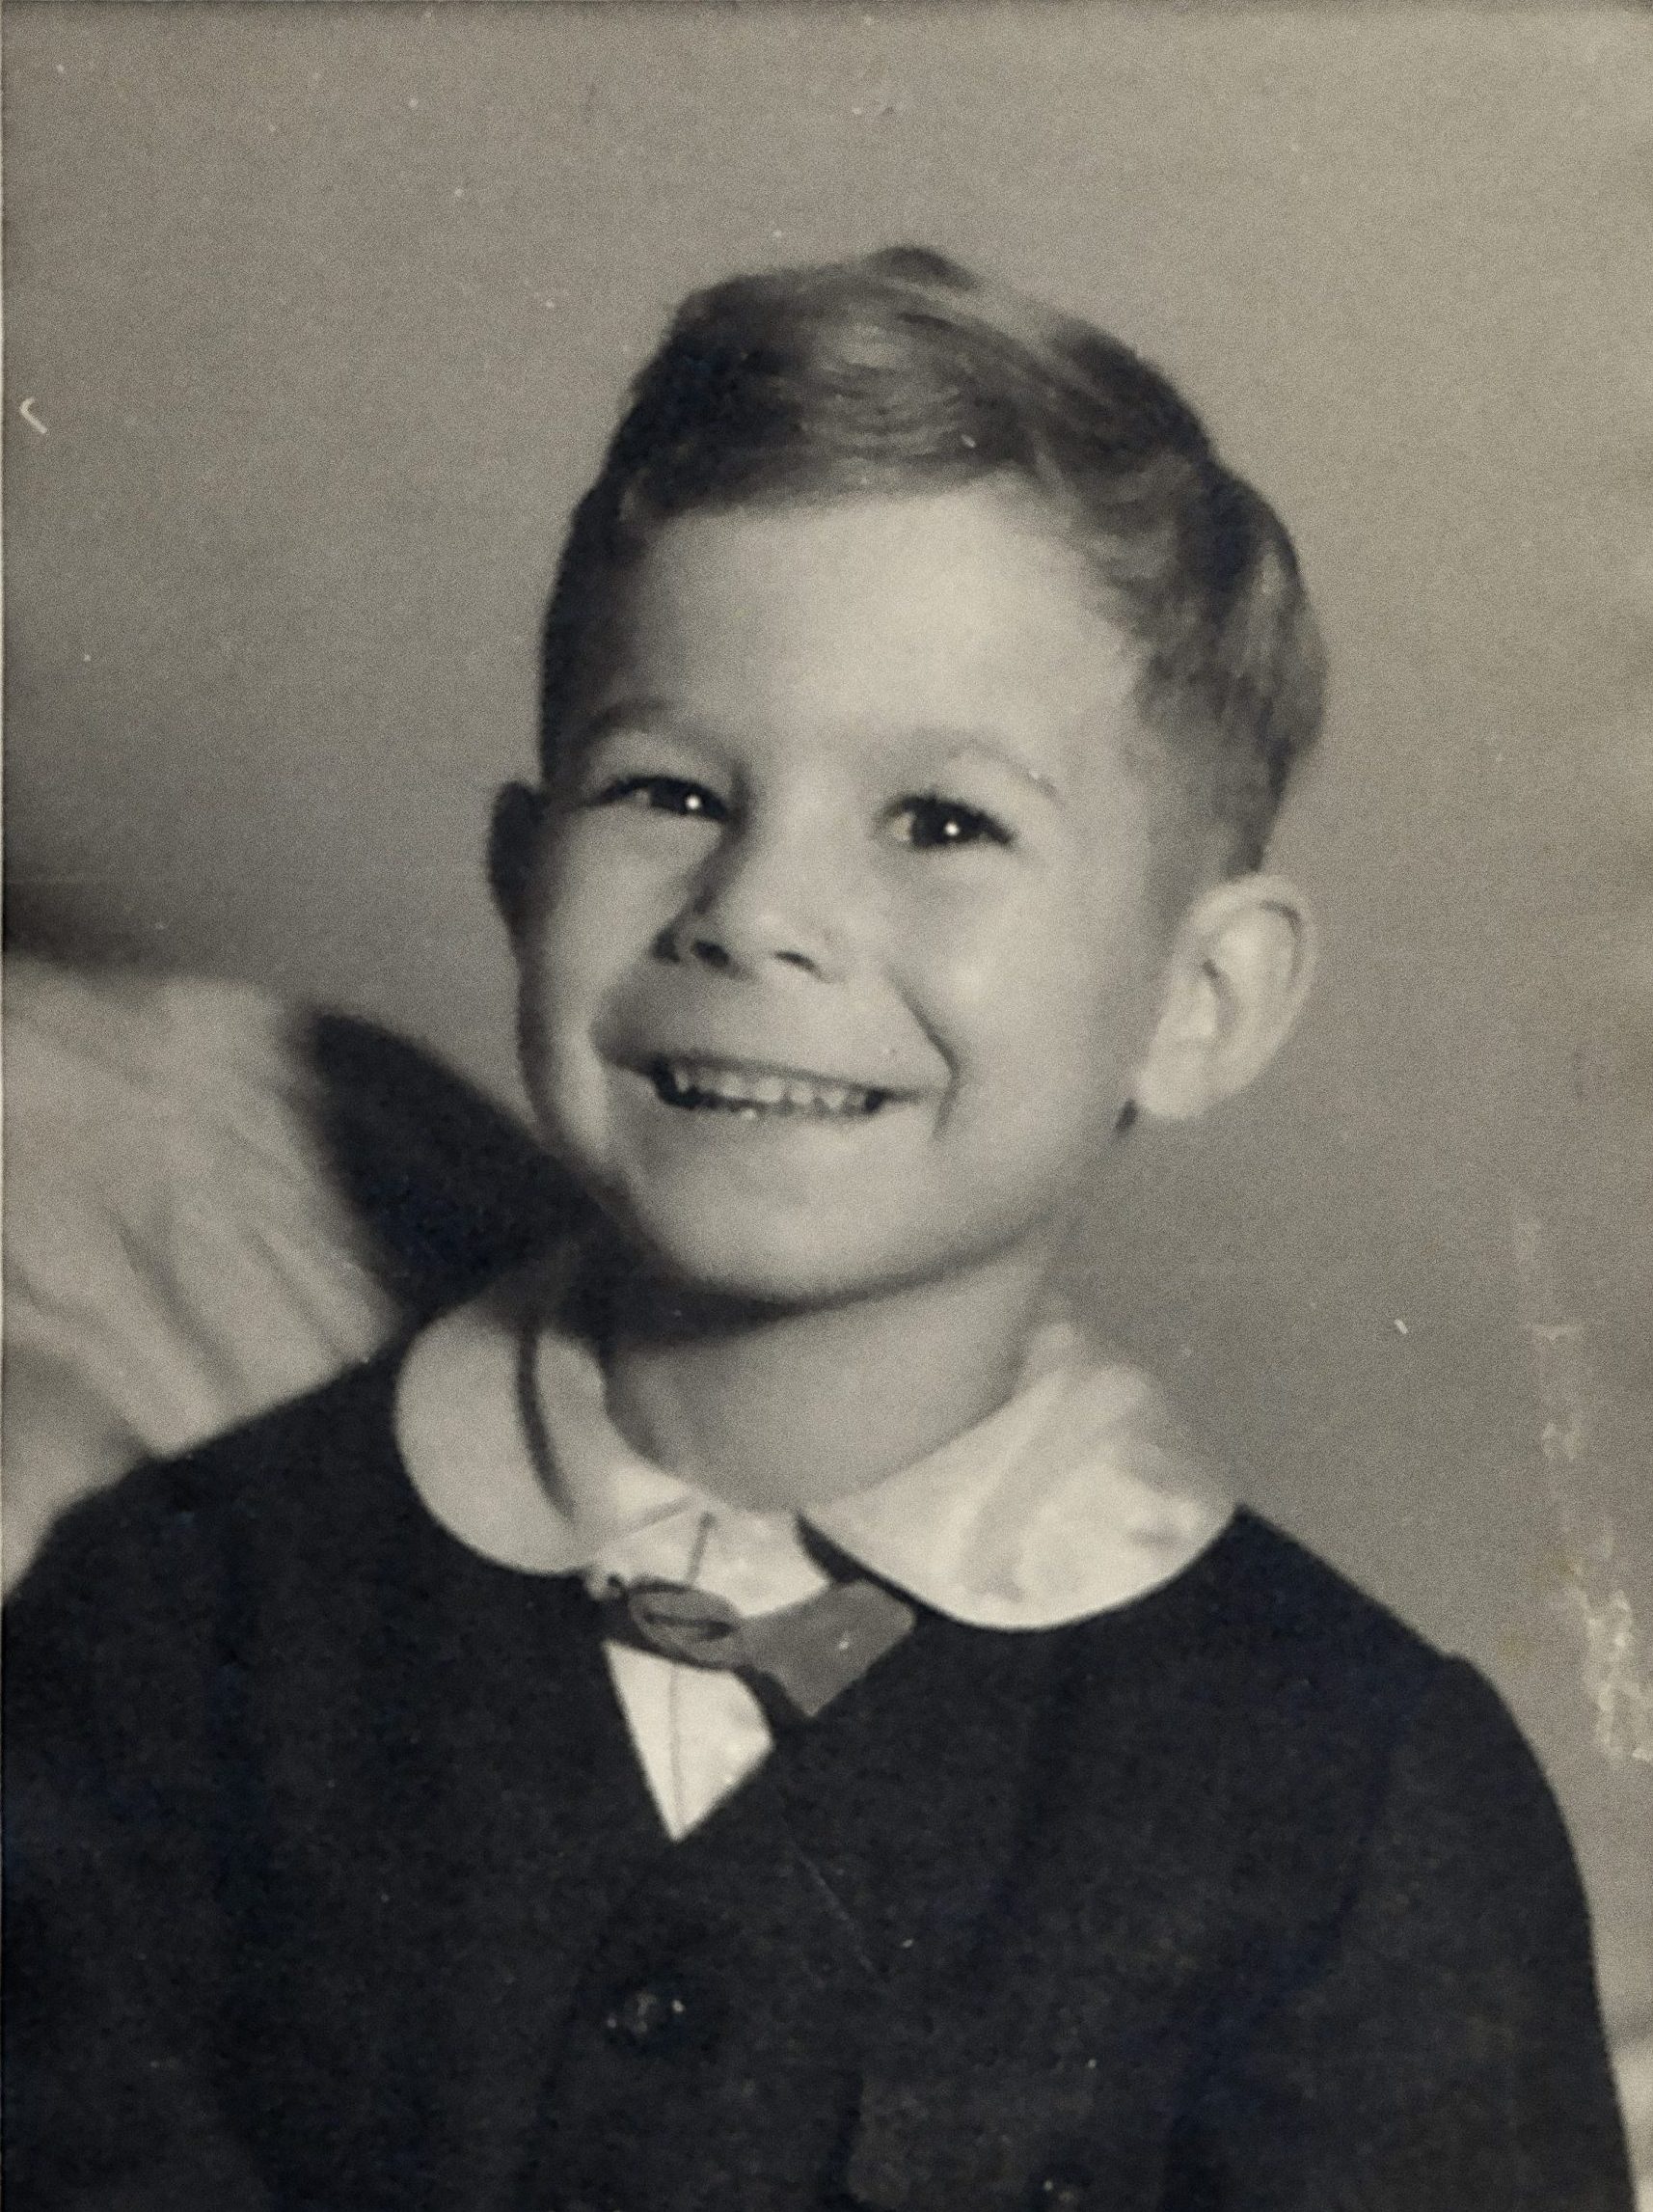 Bilden är en porträttbild tagen i fotostudio föreställande en ung pojke som ler mot kameran.